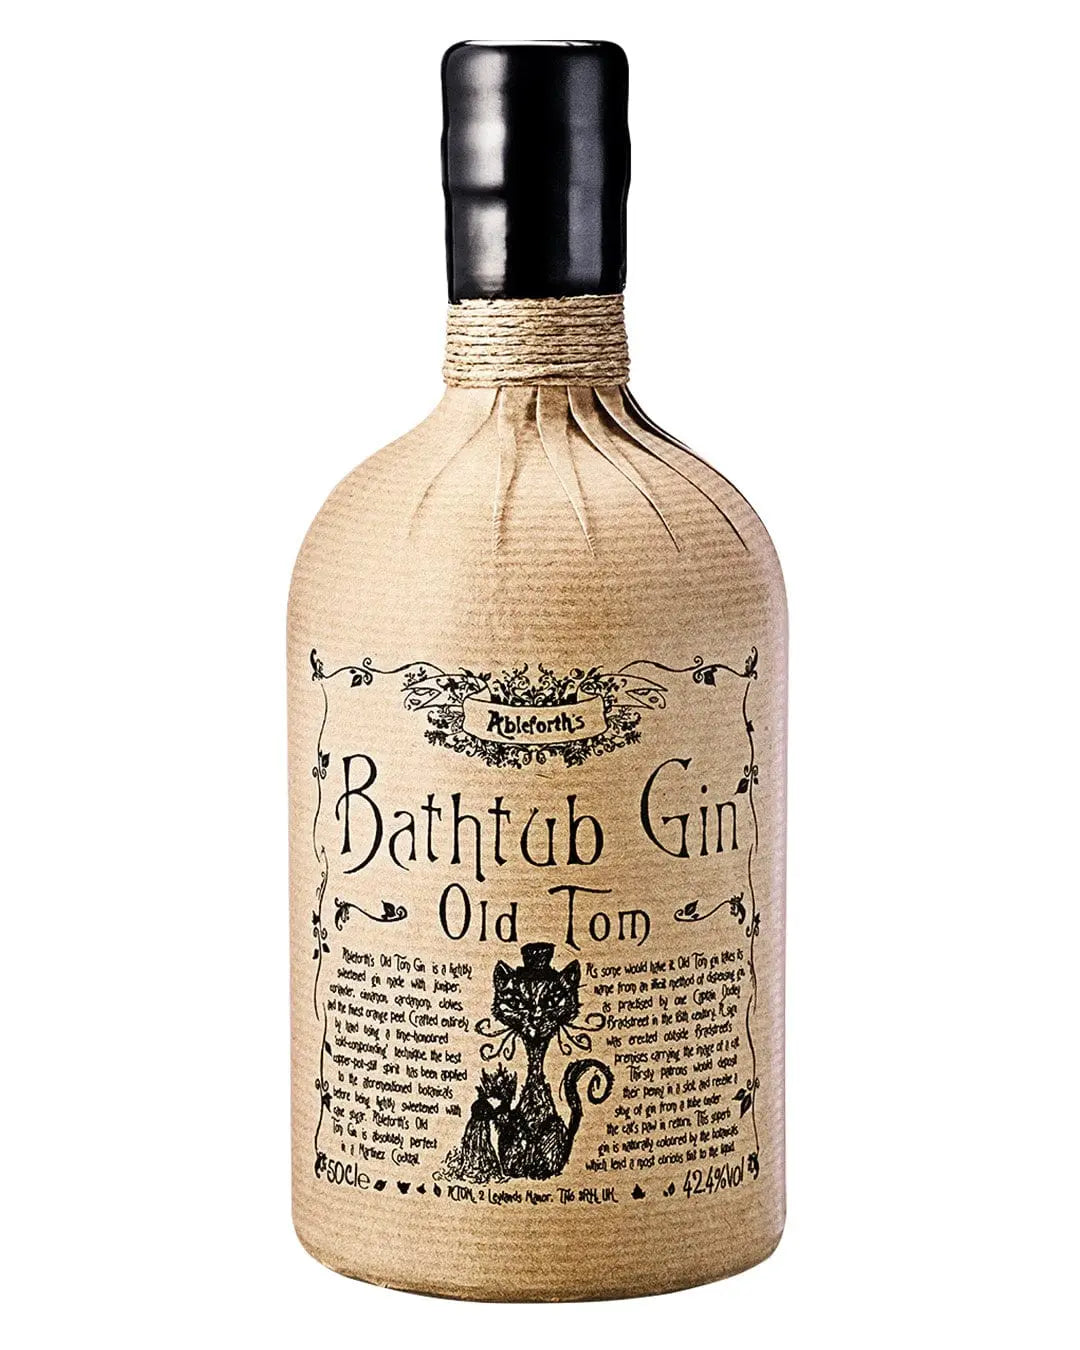 Ableforth's Bathtub Old Tom Gin, 50 cl Gin